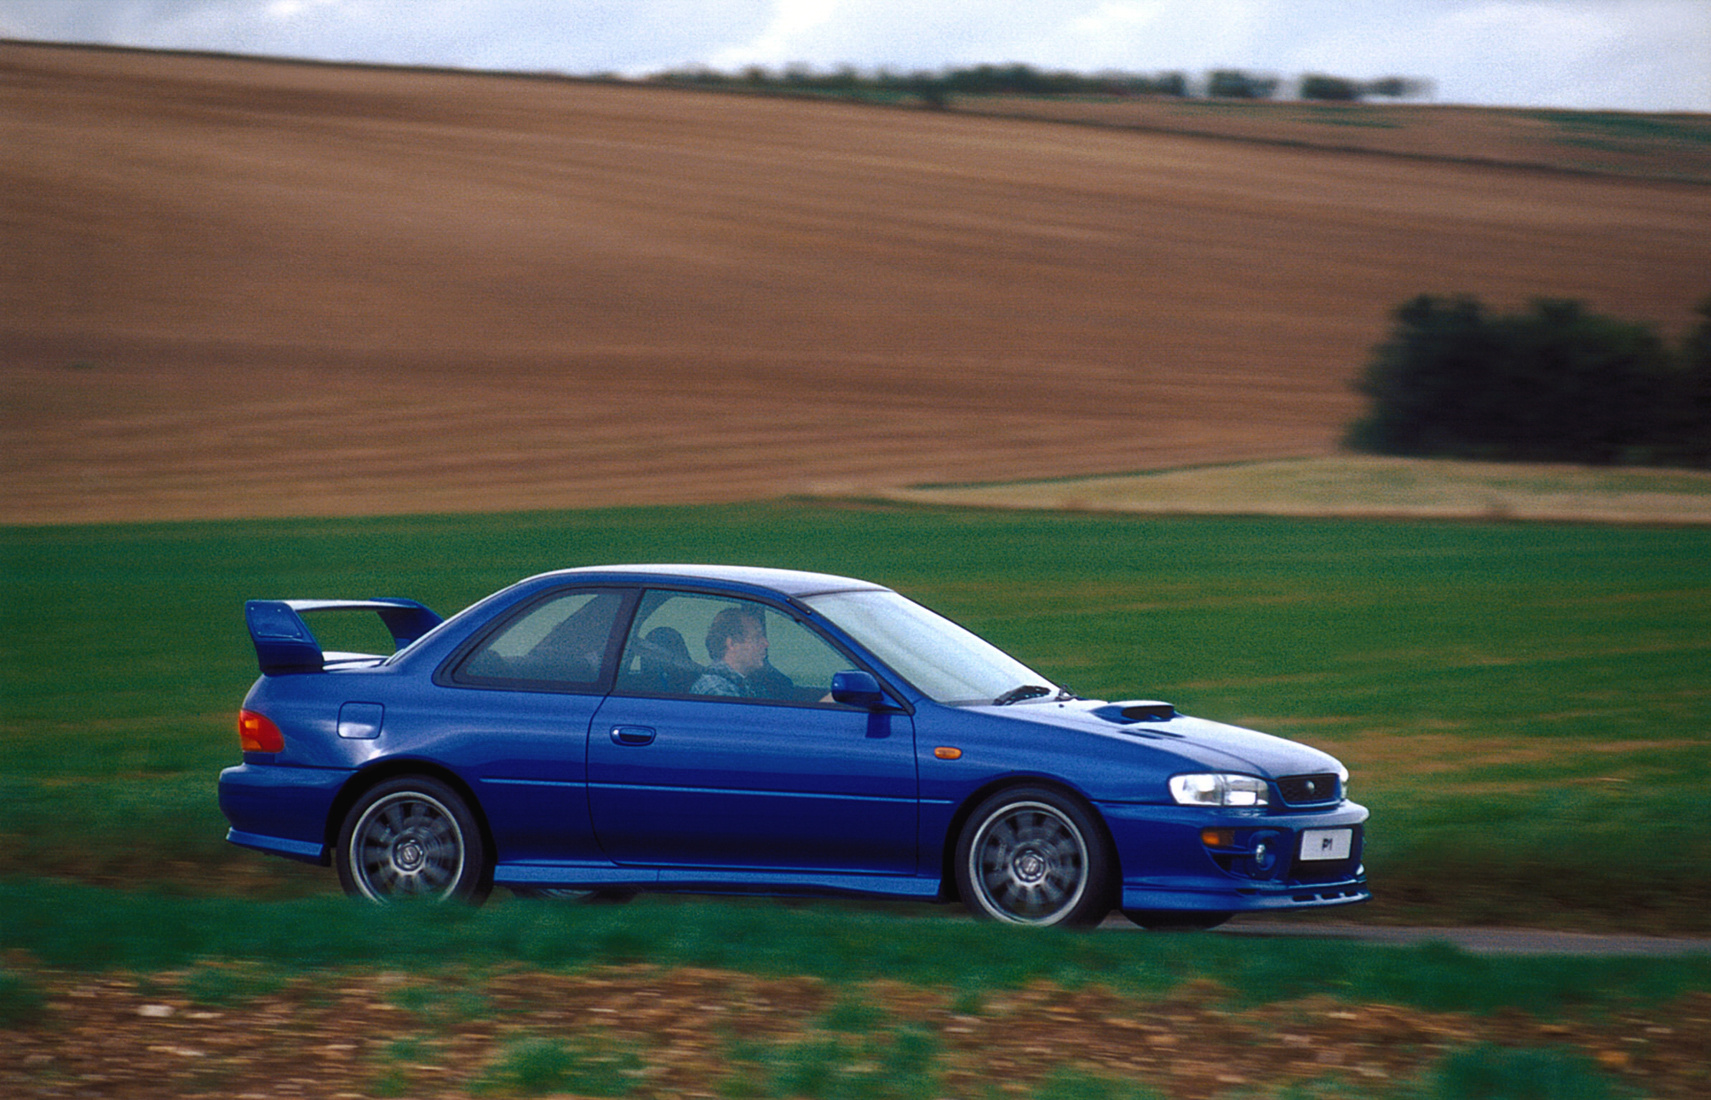 Néhány piacon a kezdetektől volt kupé Impreza, de sportváltozat csak 1997-től készült belőle. Mint a legendás 22B 